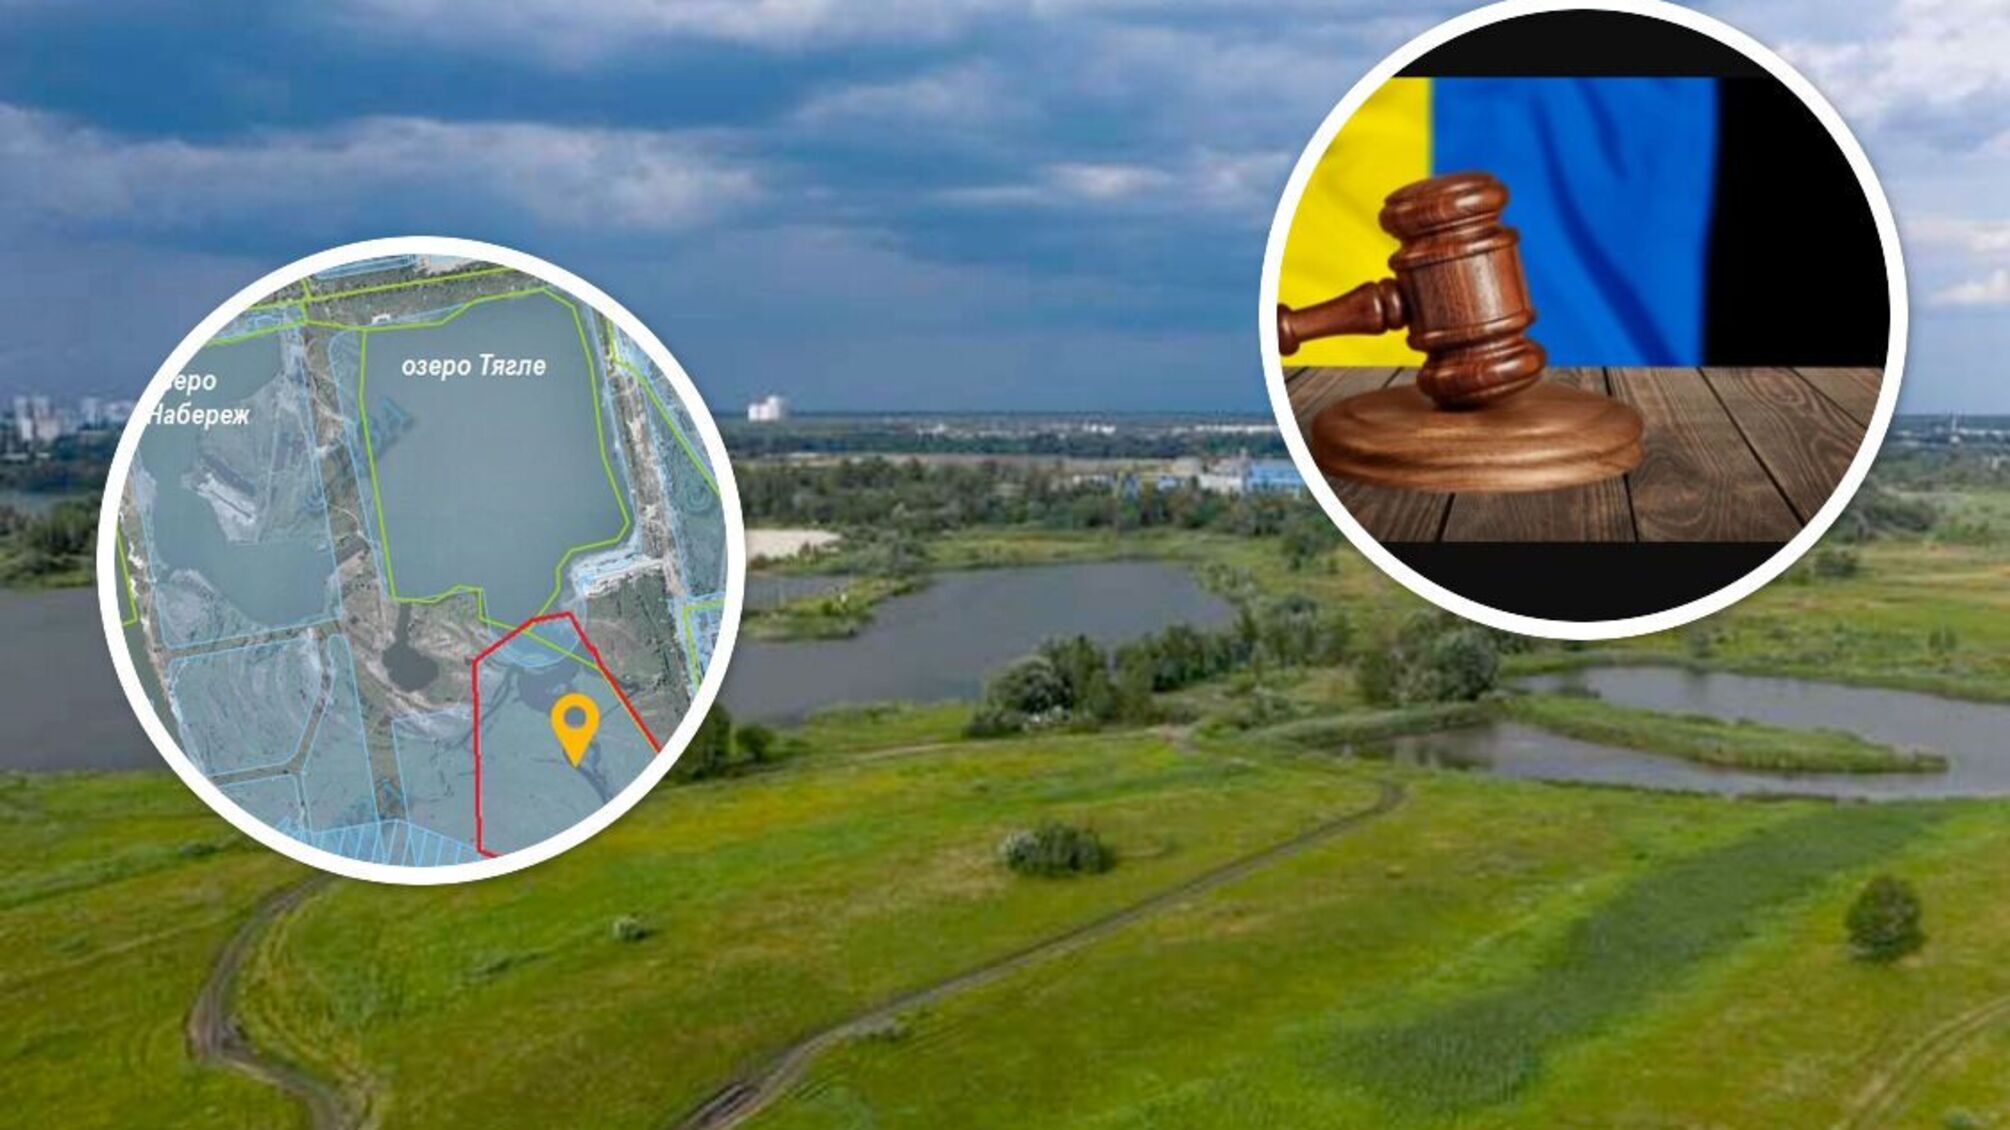 Суд вернул общине Киева 74 га земли, на которую претендовало ООО 'Агрофирма 'Зодиак'